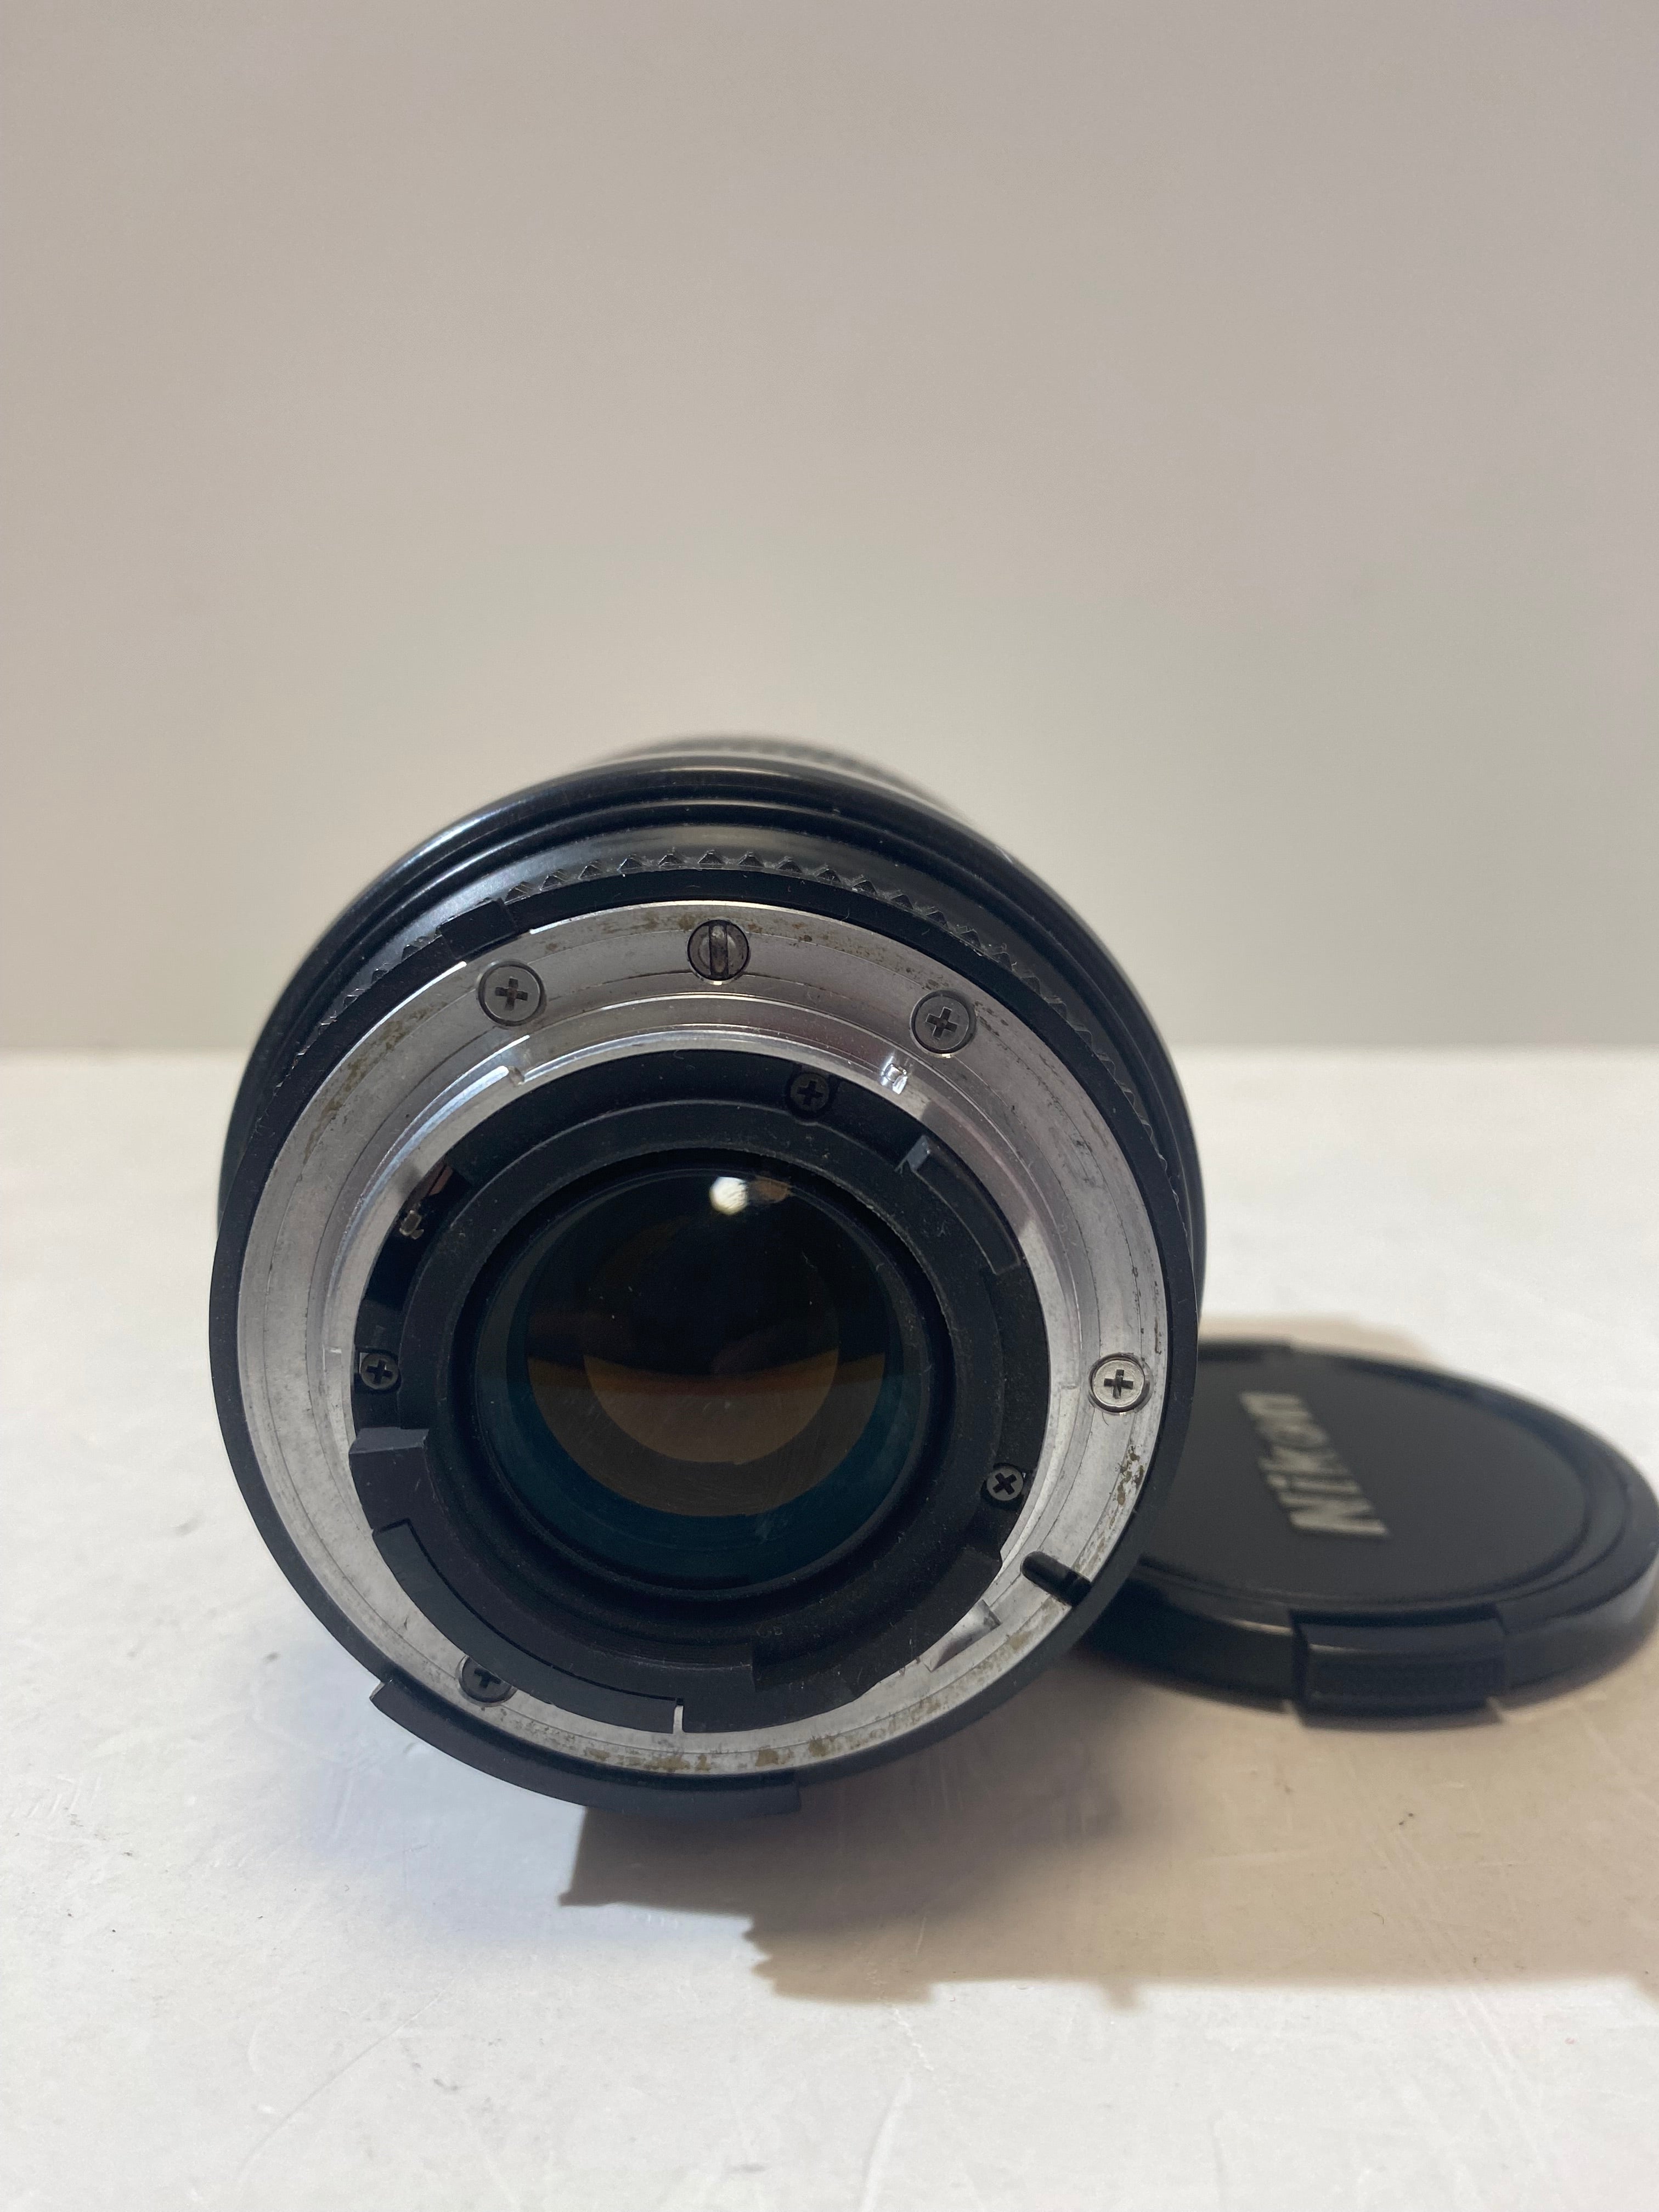 Nikon AF 70-210mm manuale 1:4-5.6 D usato